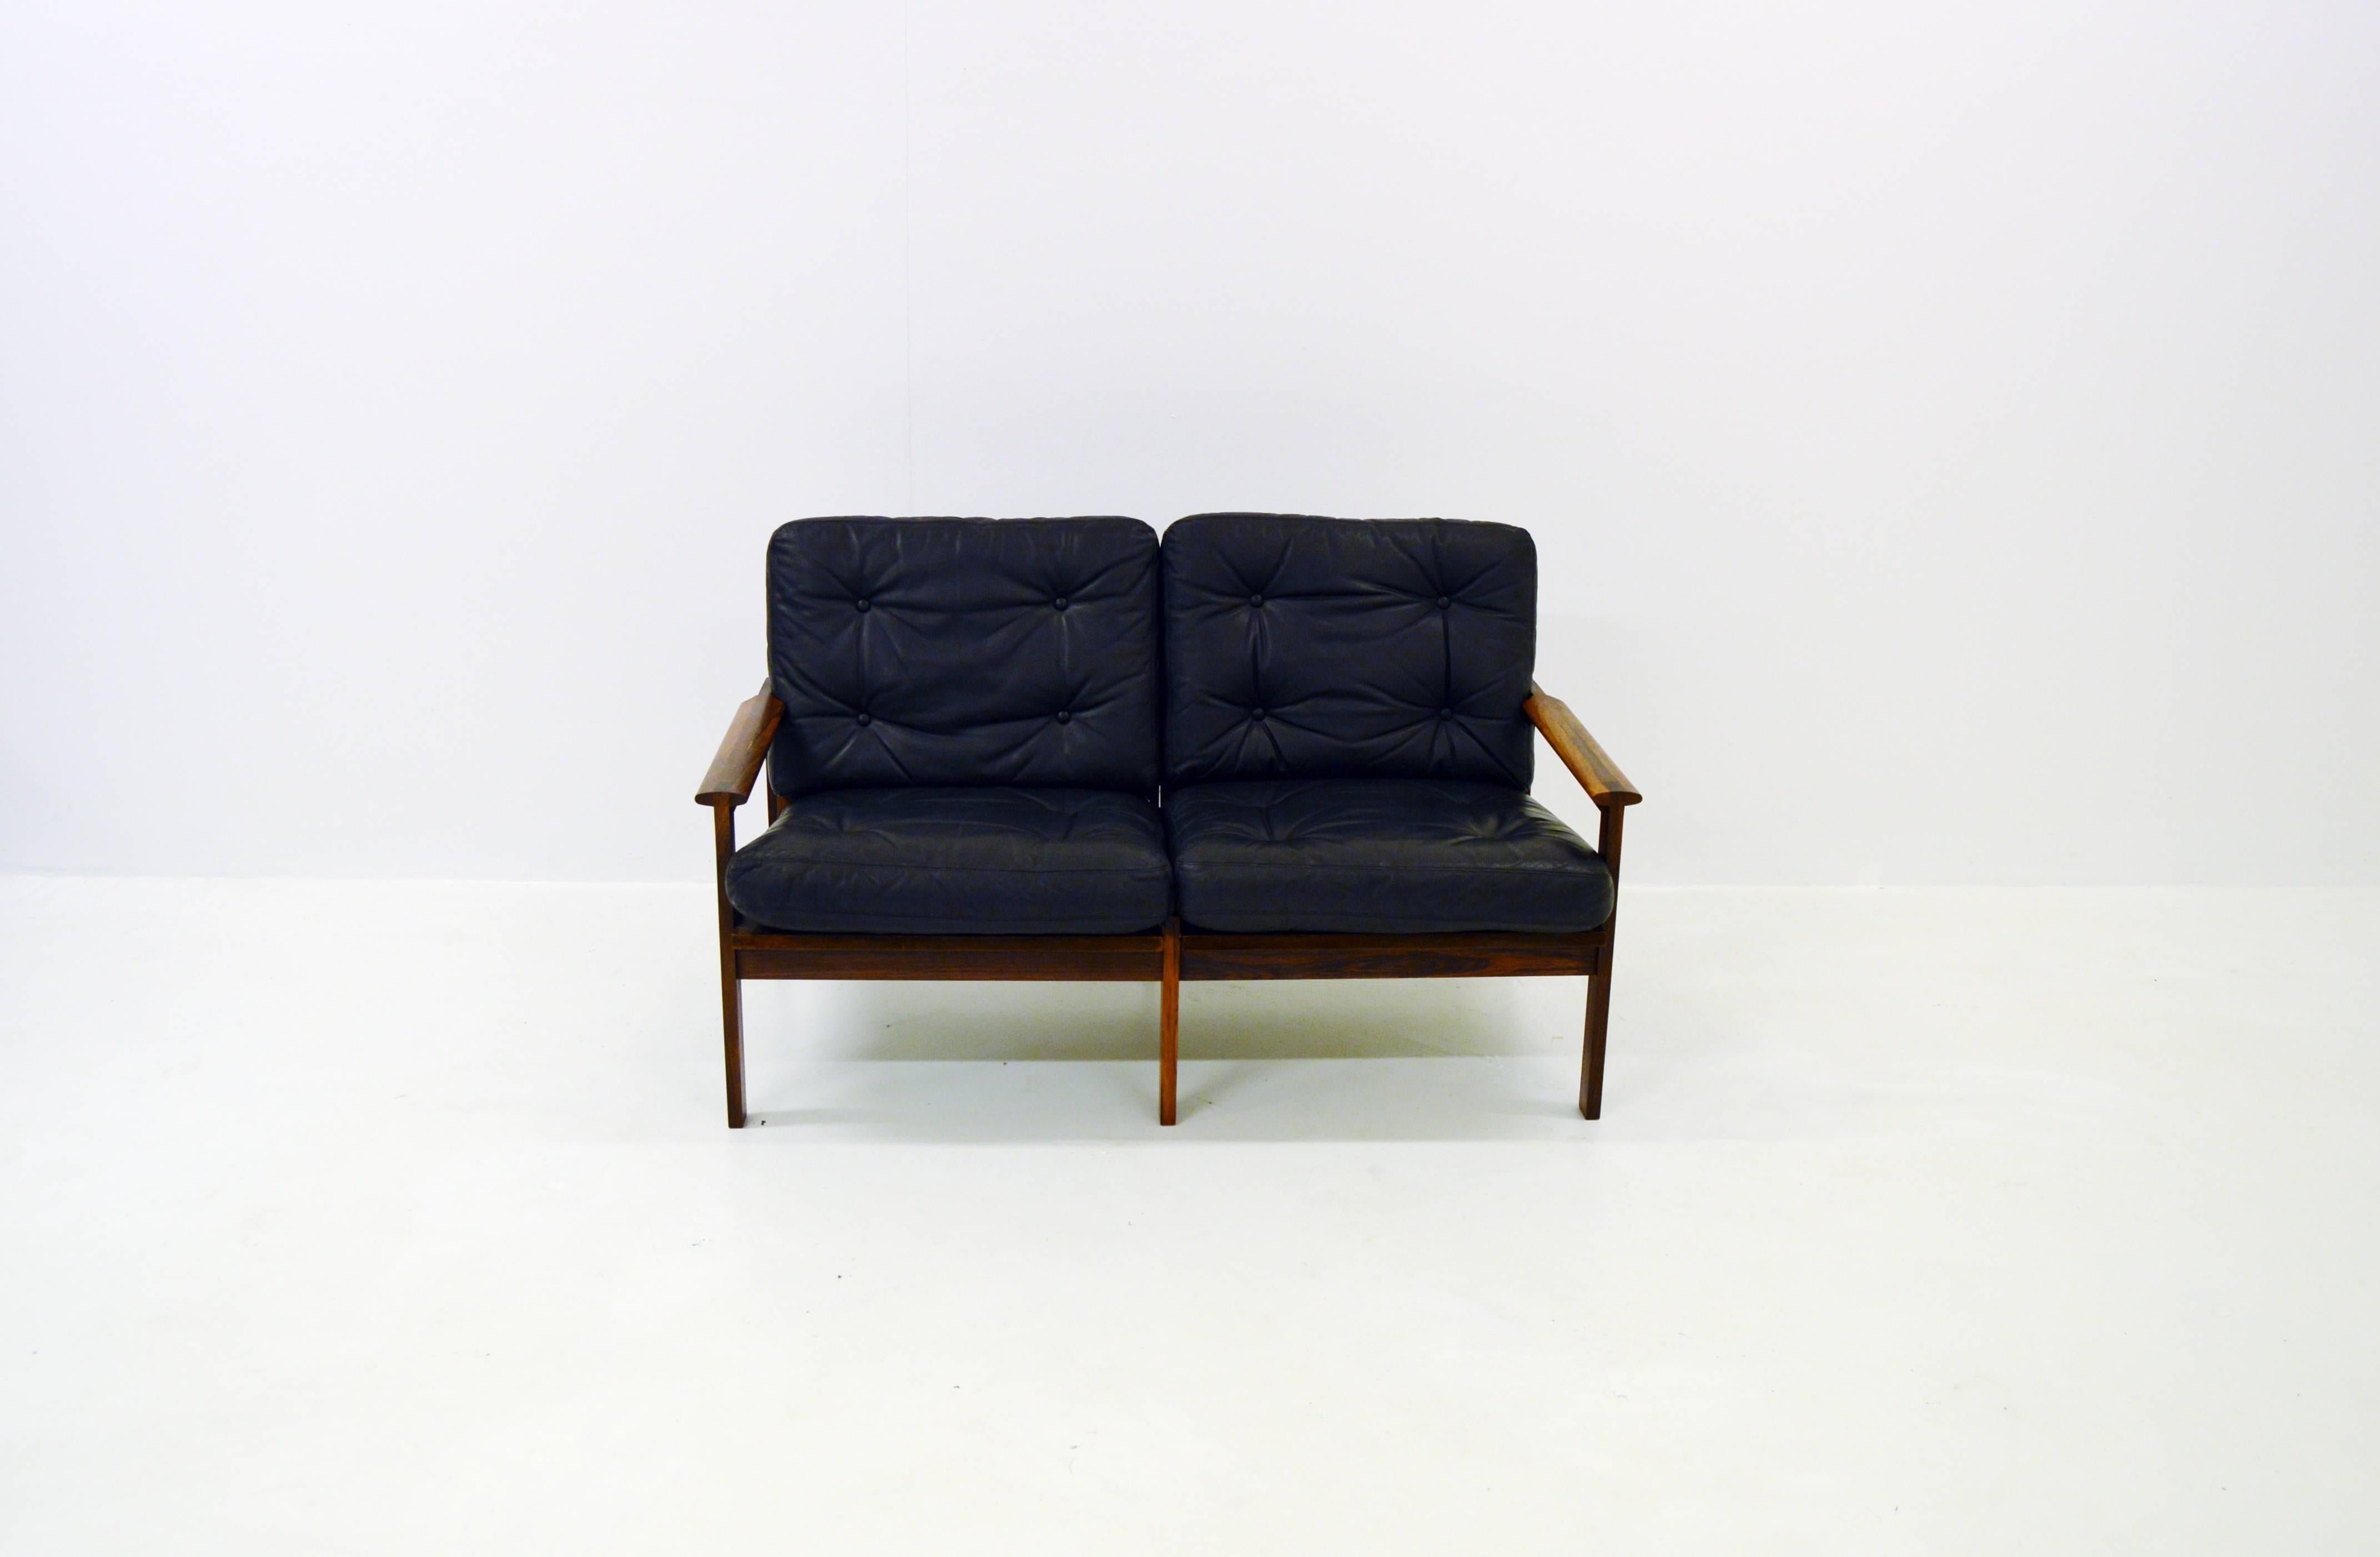 Scandinavian Modern Two-Seat Sofa by Illum Wikkelsø Capella for Niels Eilersen in Rosewood